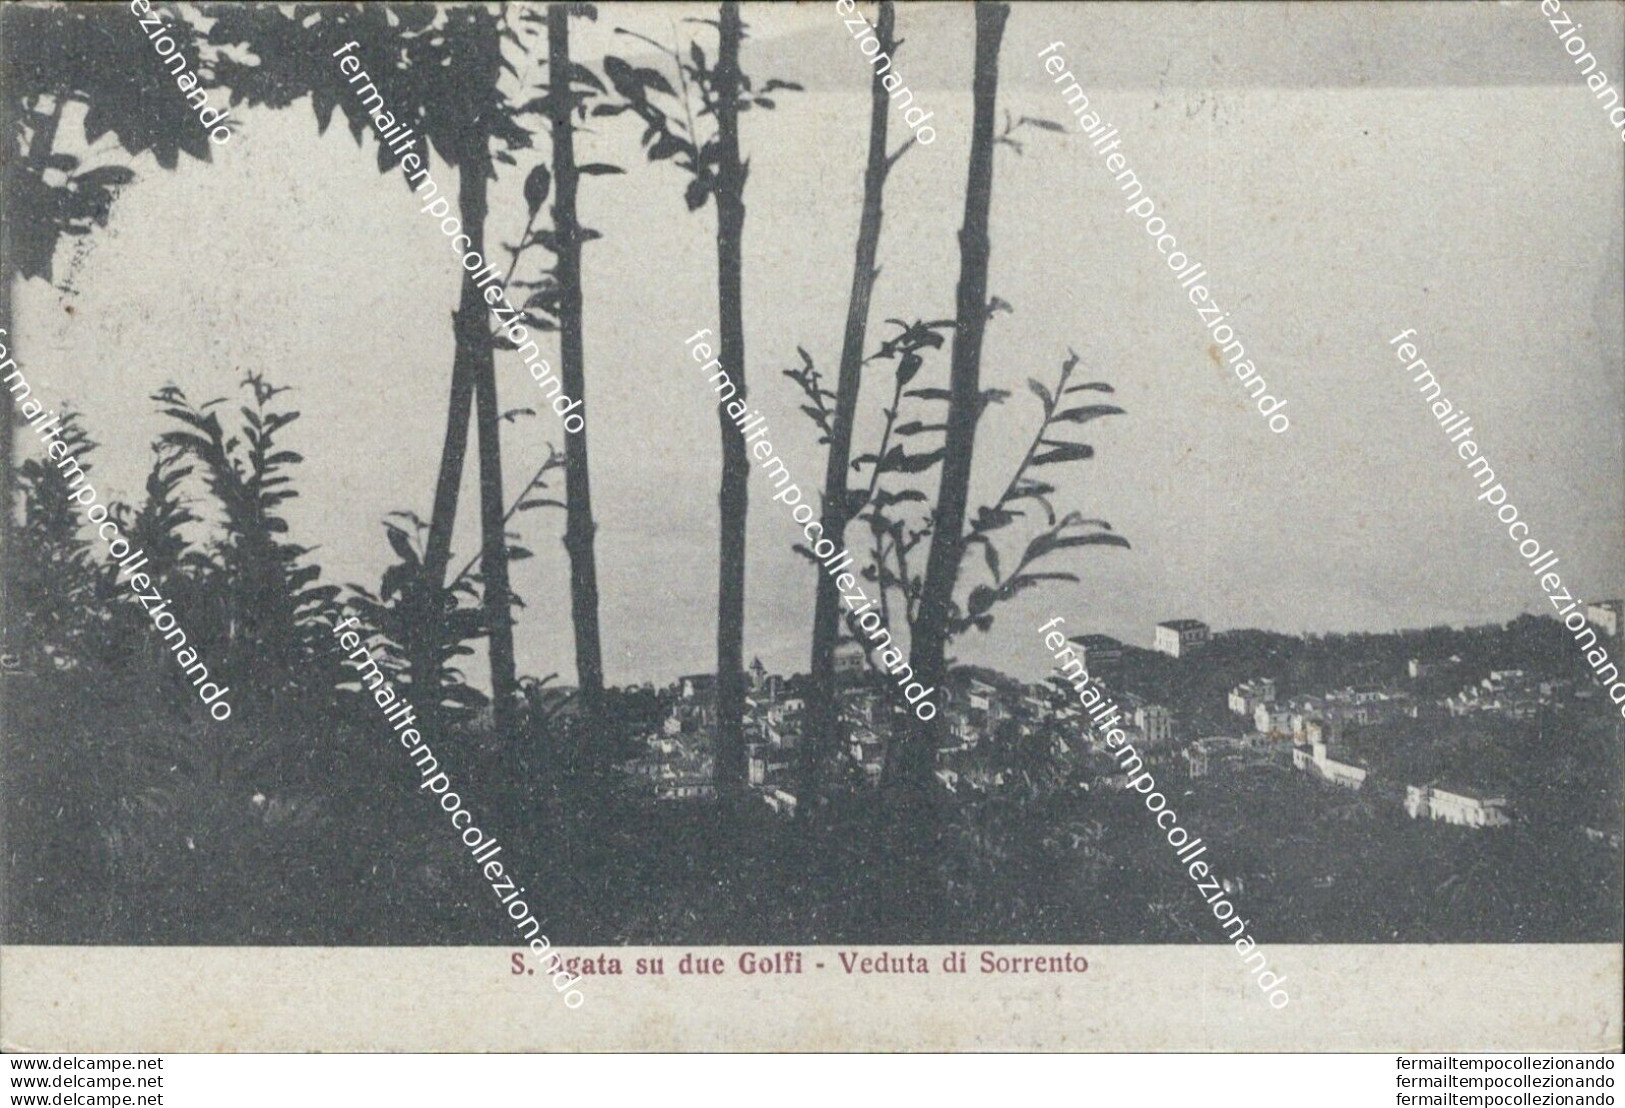 Bf382 Cartolina S.agata Su Deu Golfi Veduta Di Sorrento Provincia Di Napoli 1927 - Napoli (Neapel)